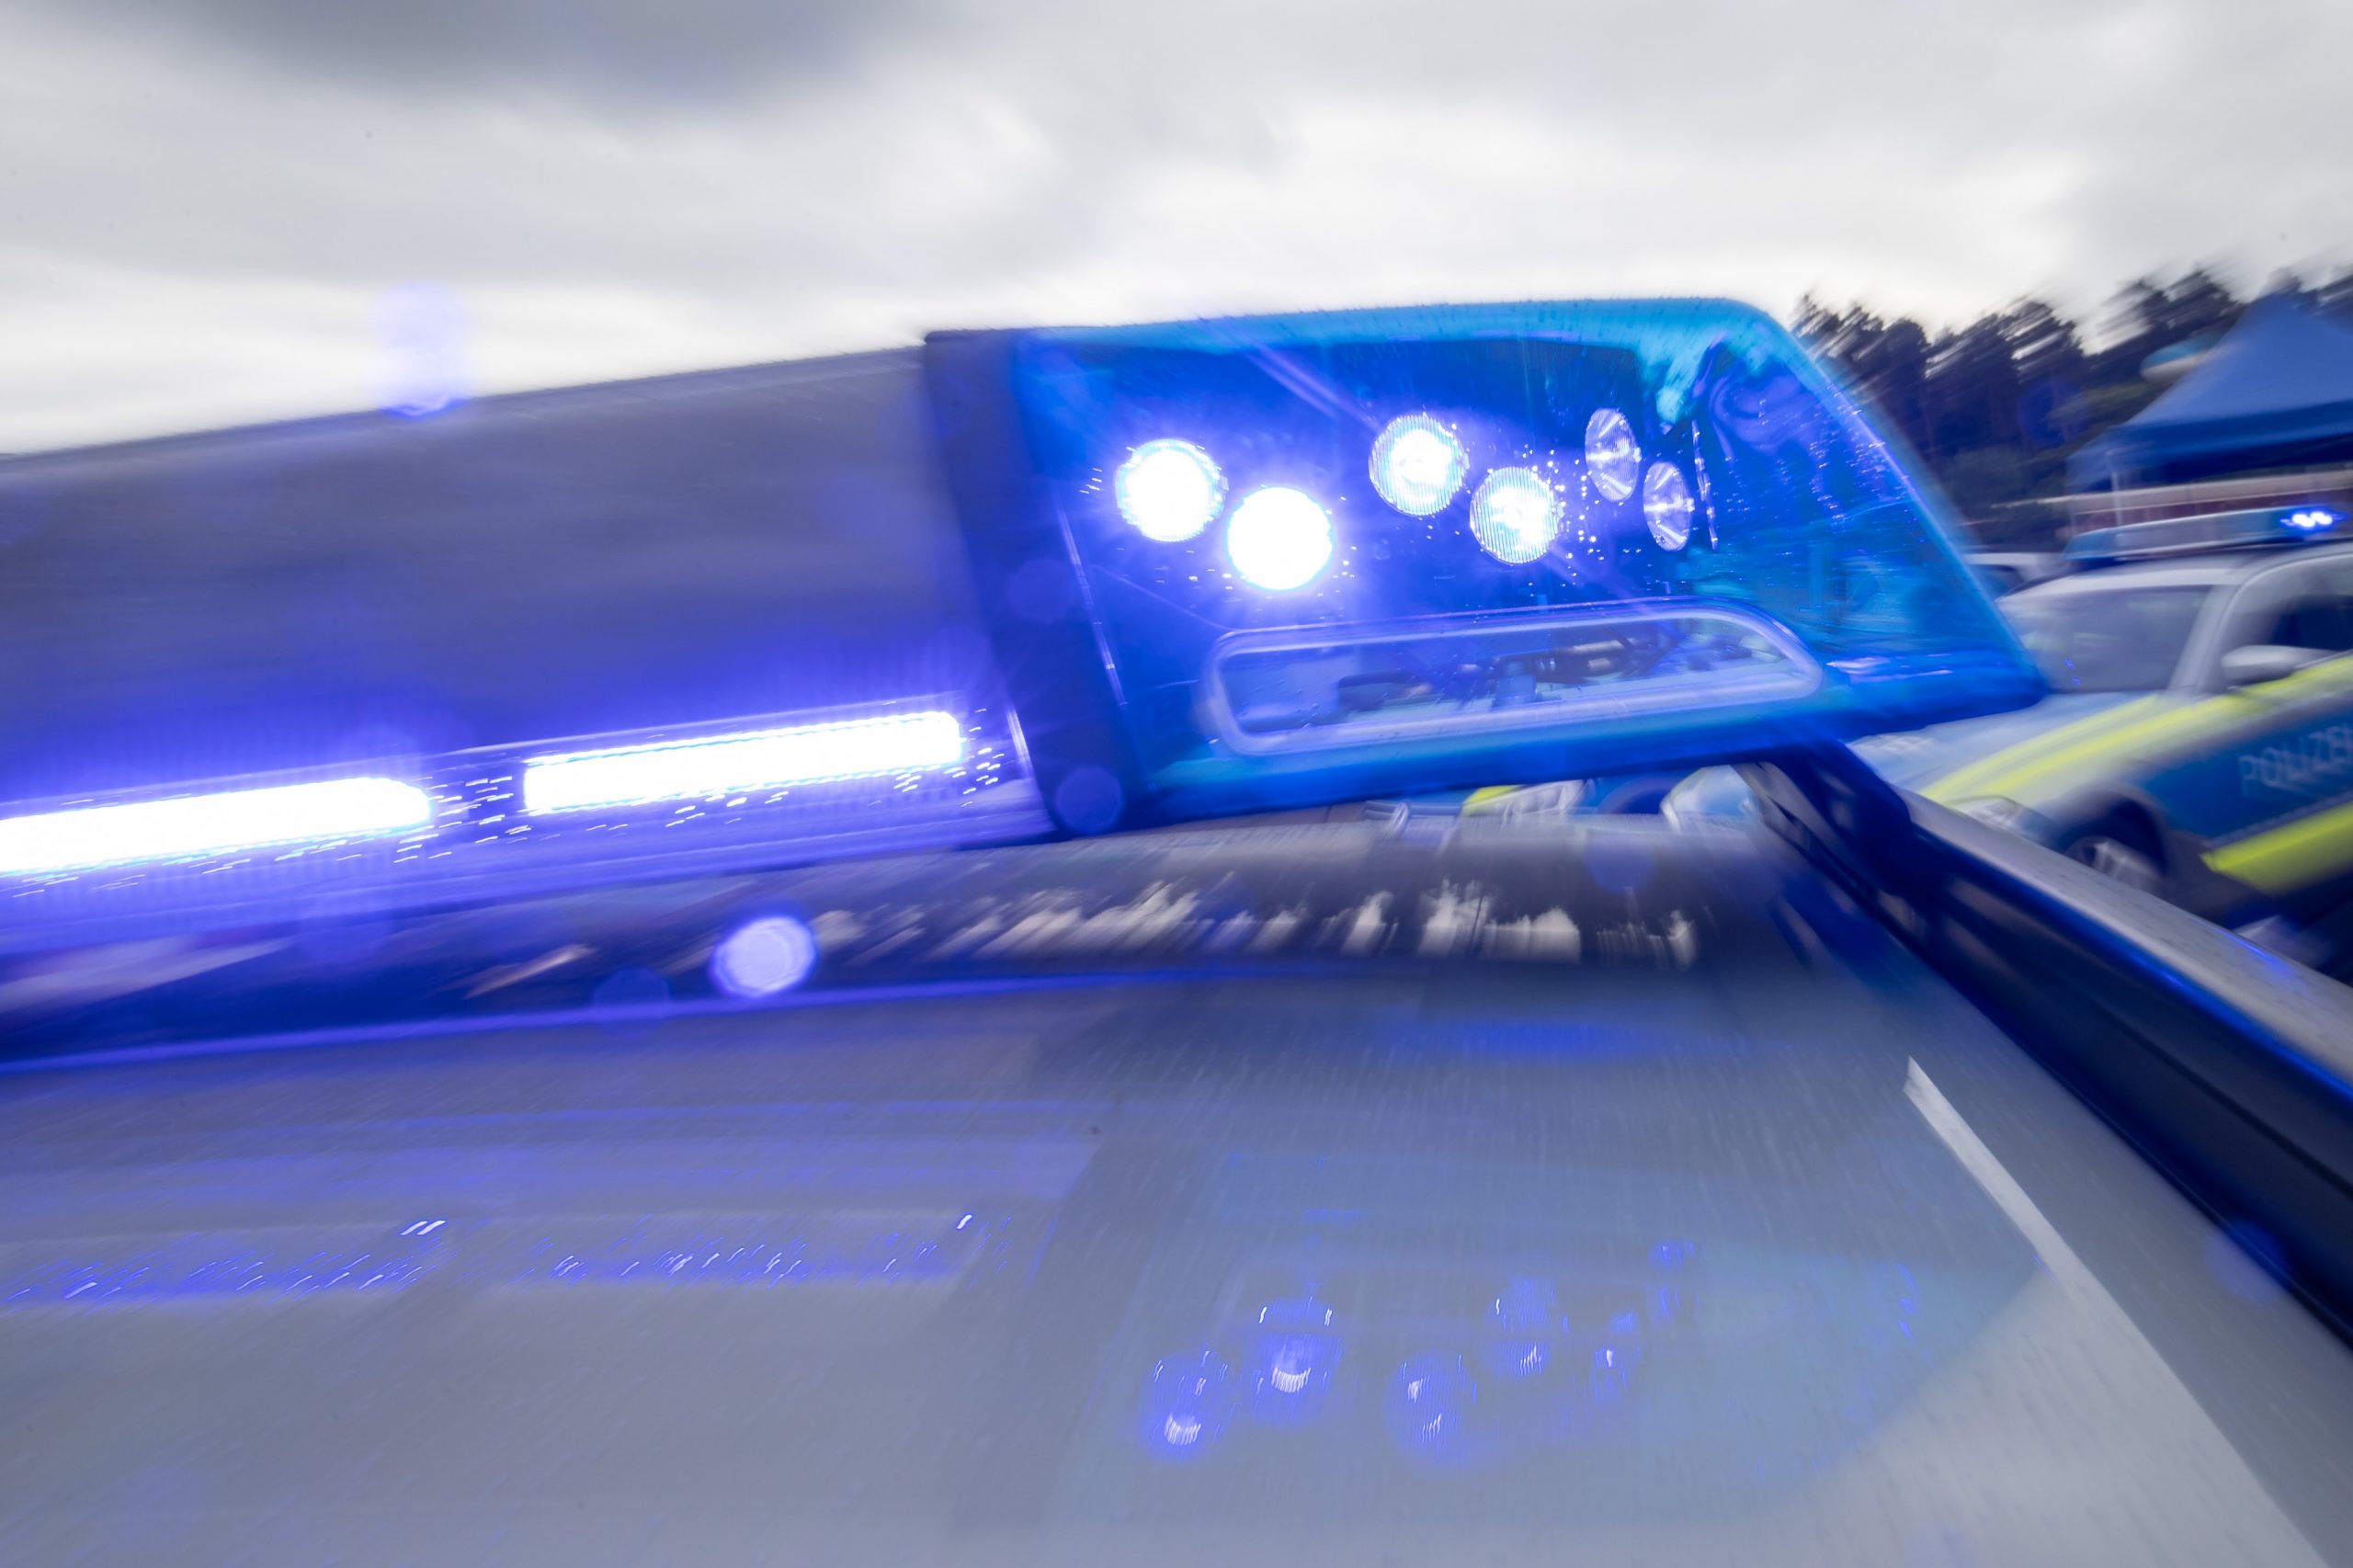 Blaulicht auf Streifenwagen. Wegen Scheinwaffen kam es zu einem Polizeieinsatz in Bremen.